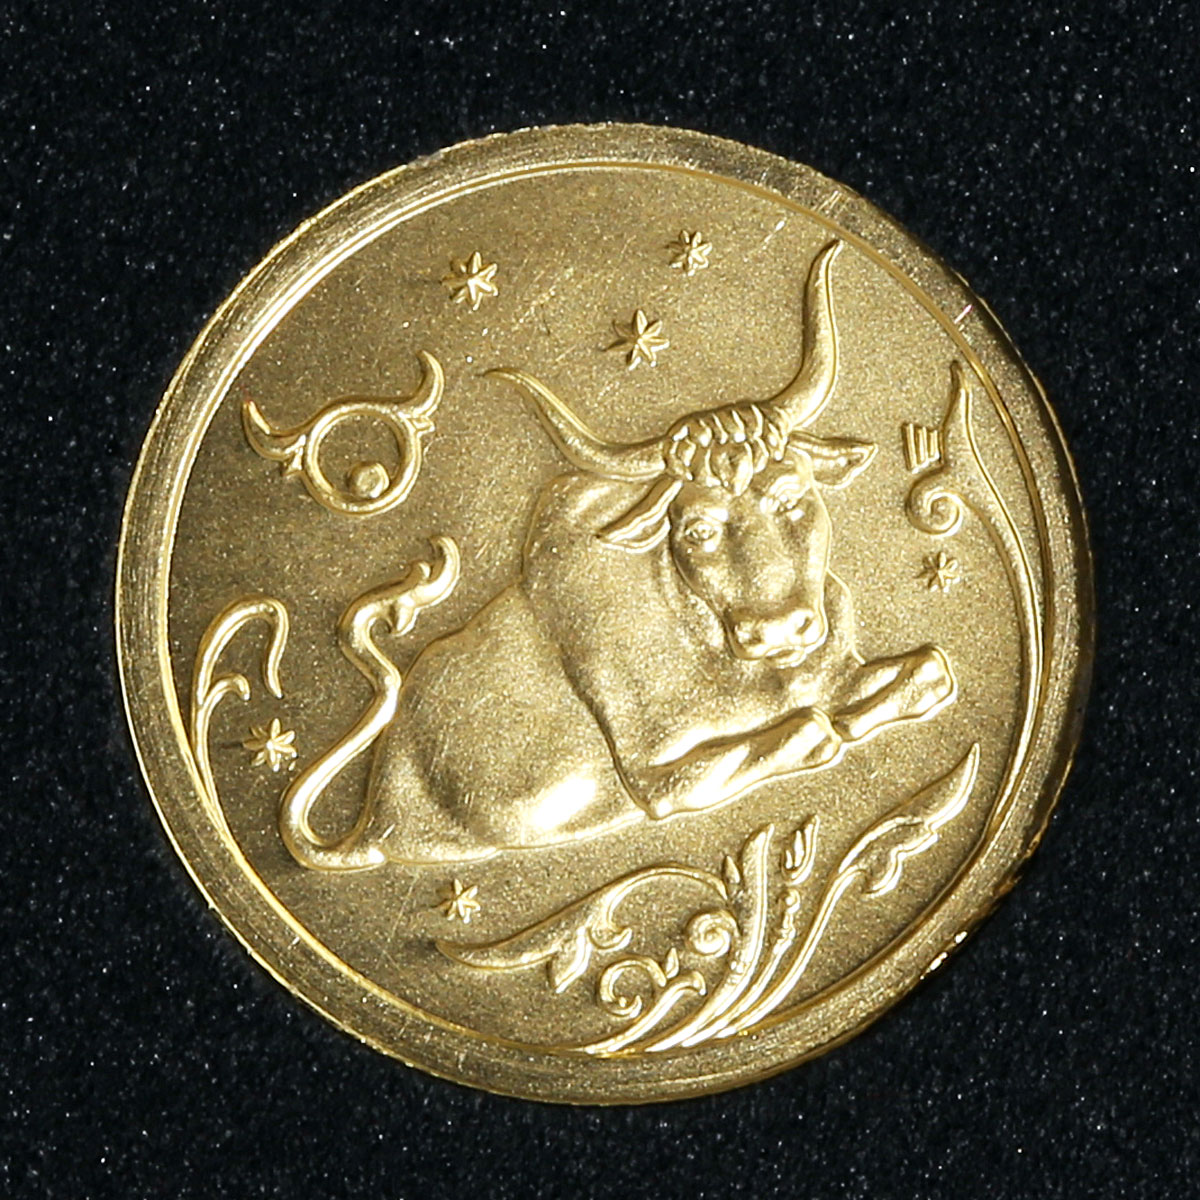 Russia 25 rubles Zodiac Taurus Bull gold 2005